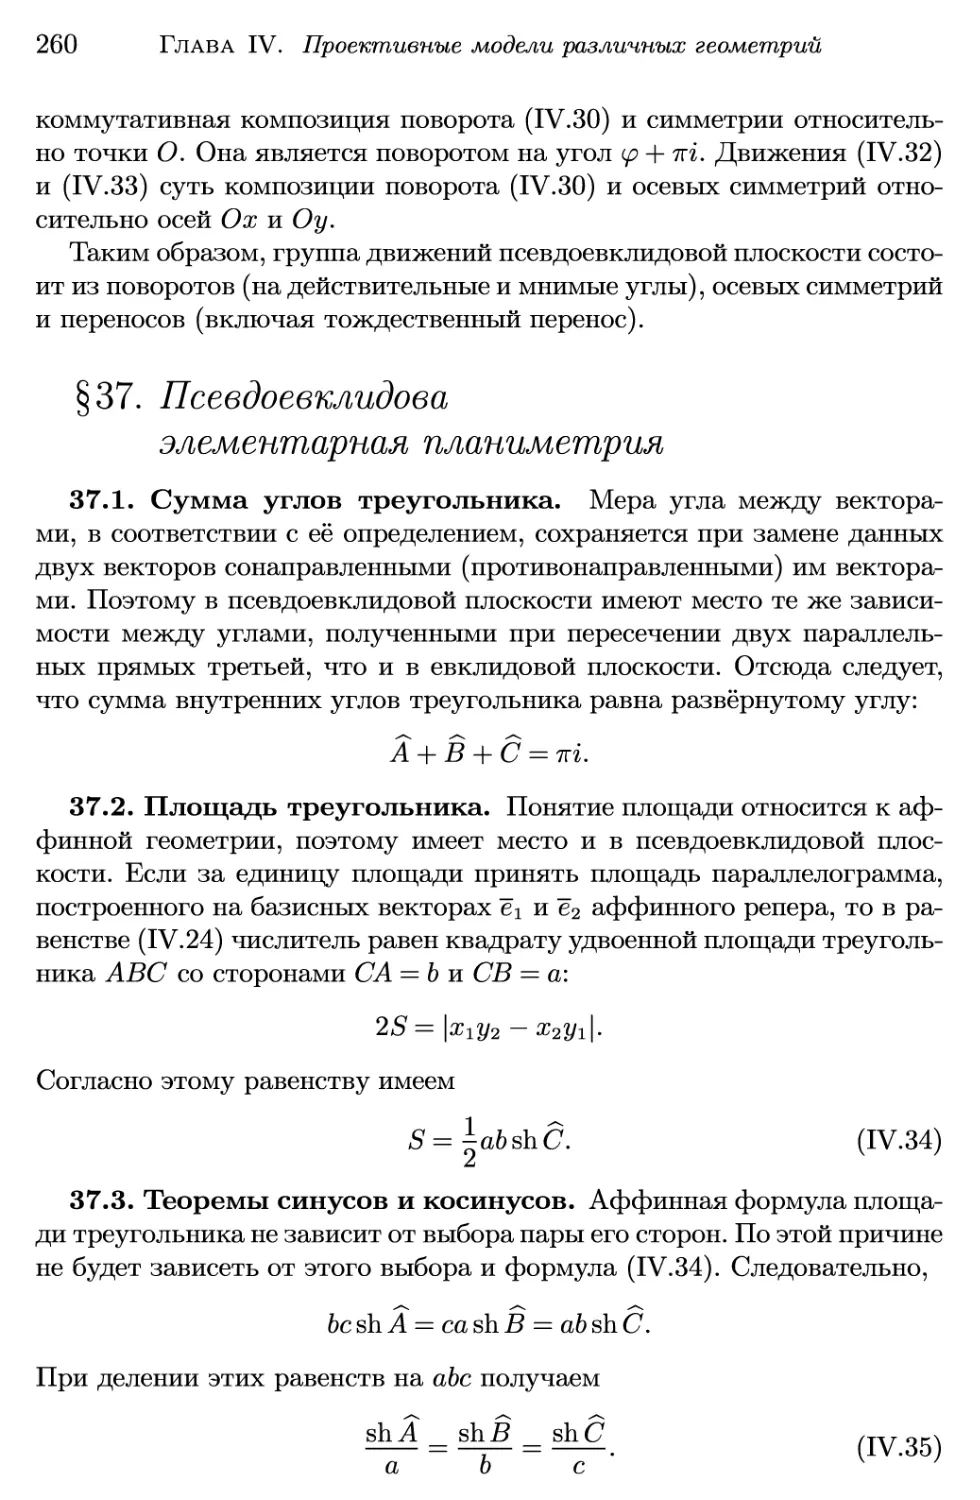 §37. Псевдоевклидова элементарная планиметрия